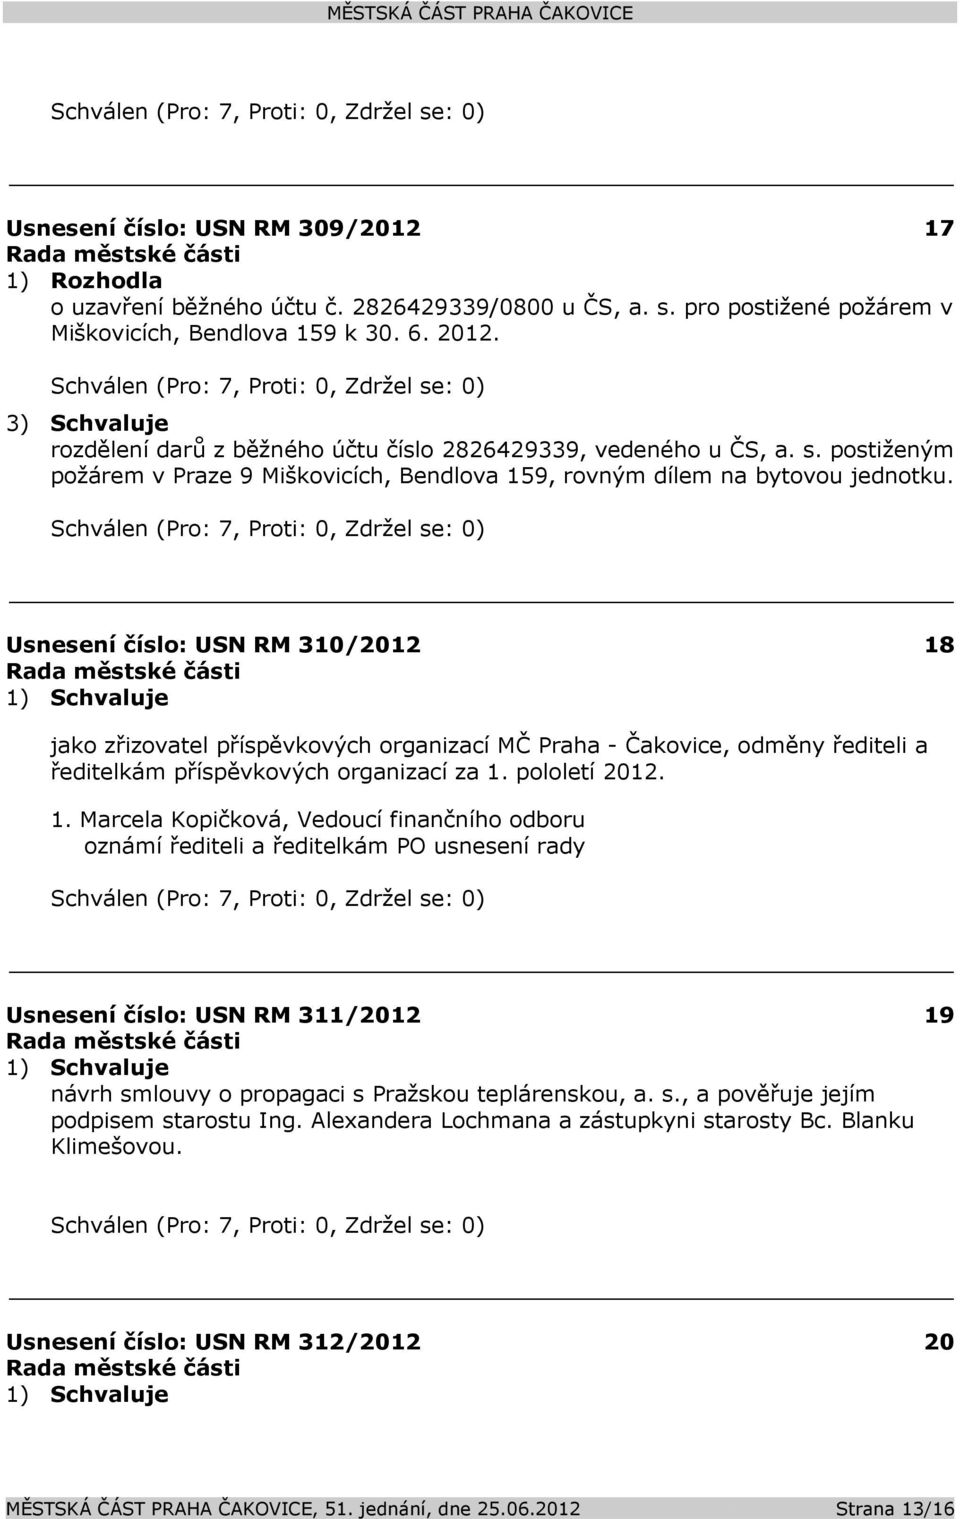 Usnesení číslo: 310/2012 18 jako zřizovatel příspěvkových organizací MČ Praha - Čakovice, odměny řediteli a ředitelkám příspěvkových organizací za 1. pololetí 2012. 1. Marcela Kopičková, Vedoucí finančního odboru oznámí řediteli a ředitelkám PO usnesení rady Usnesení číslo: 311/2012 19 návrh smlouvy o propagaci s Pražskou teplárenskou, a.